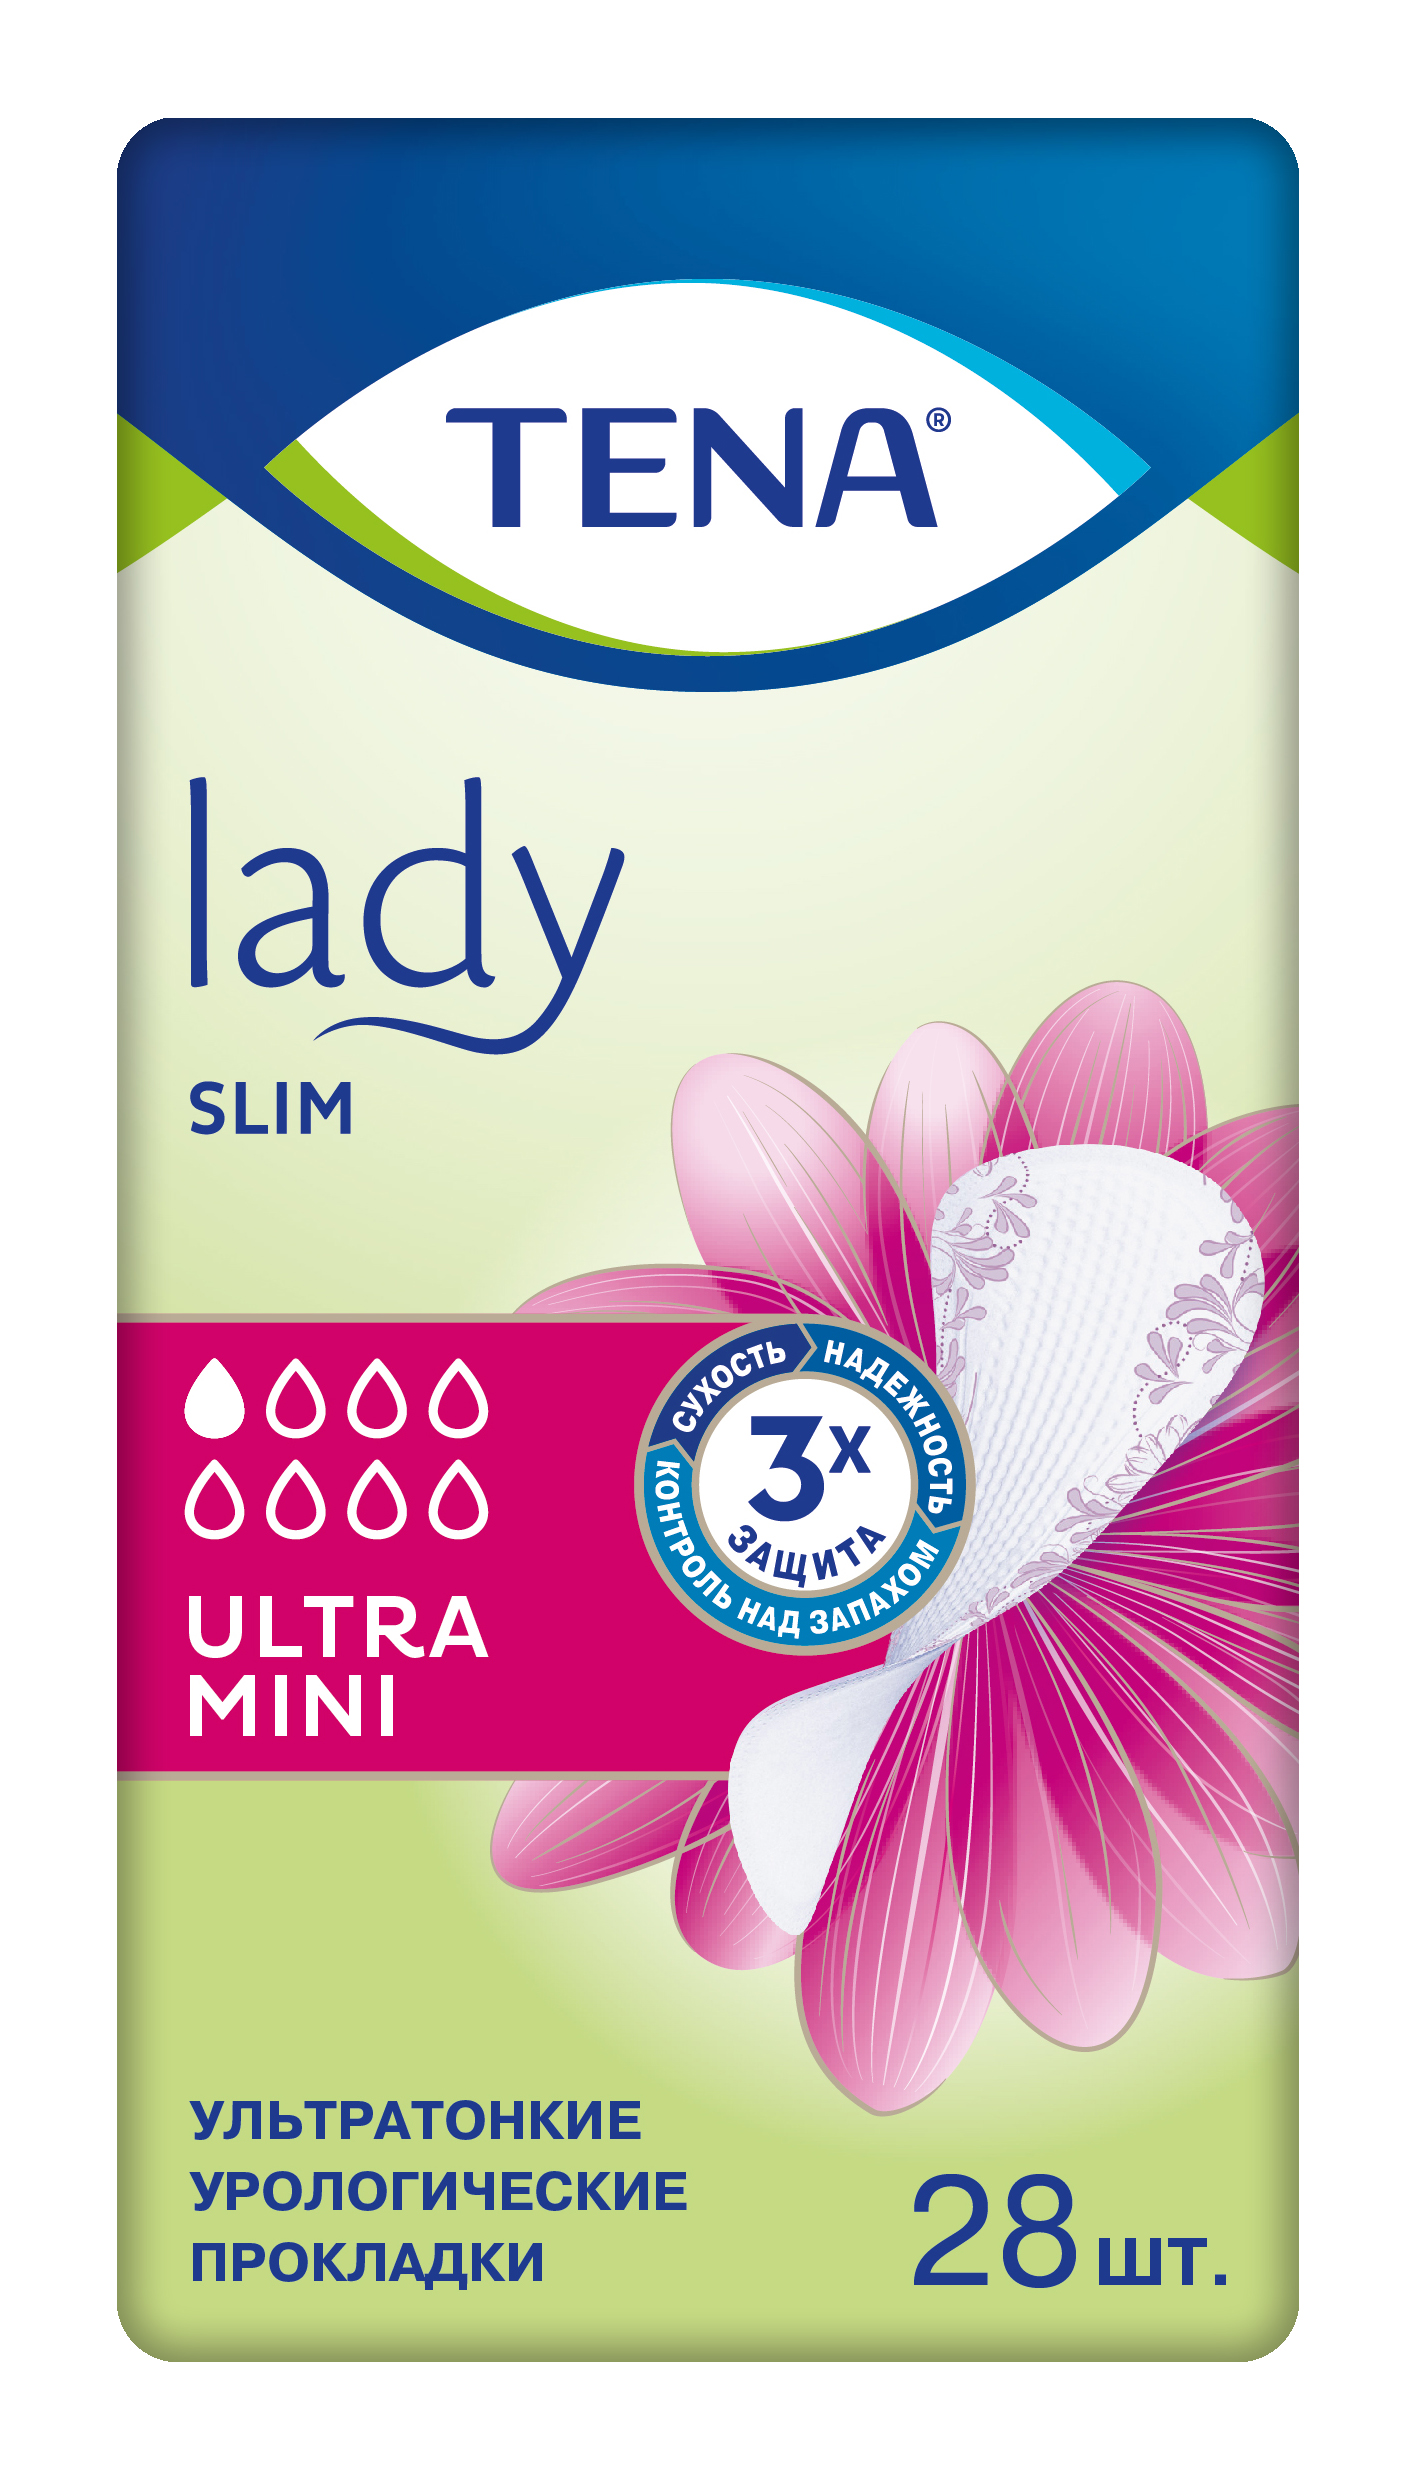 Купить Lady Ultra Mini Урологические, Урологические прокладки TENA Lady Slim Ultra Mini 28 шт.